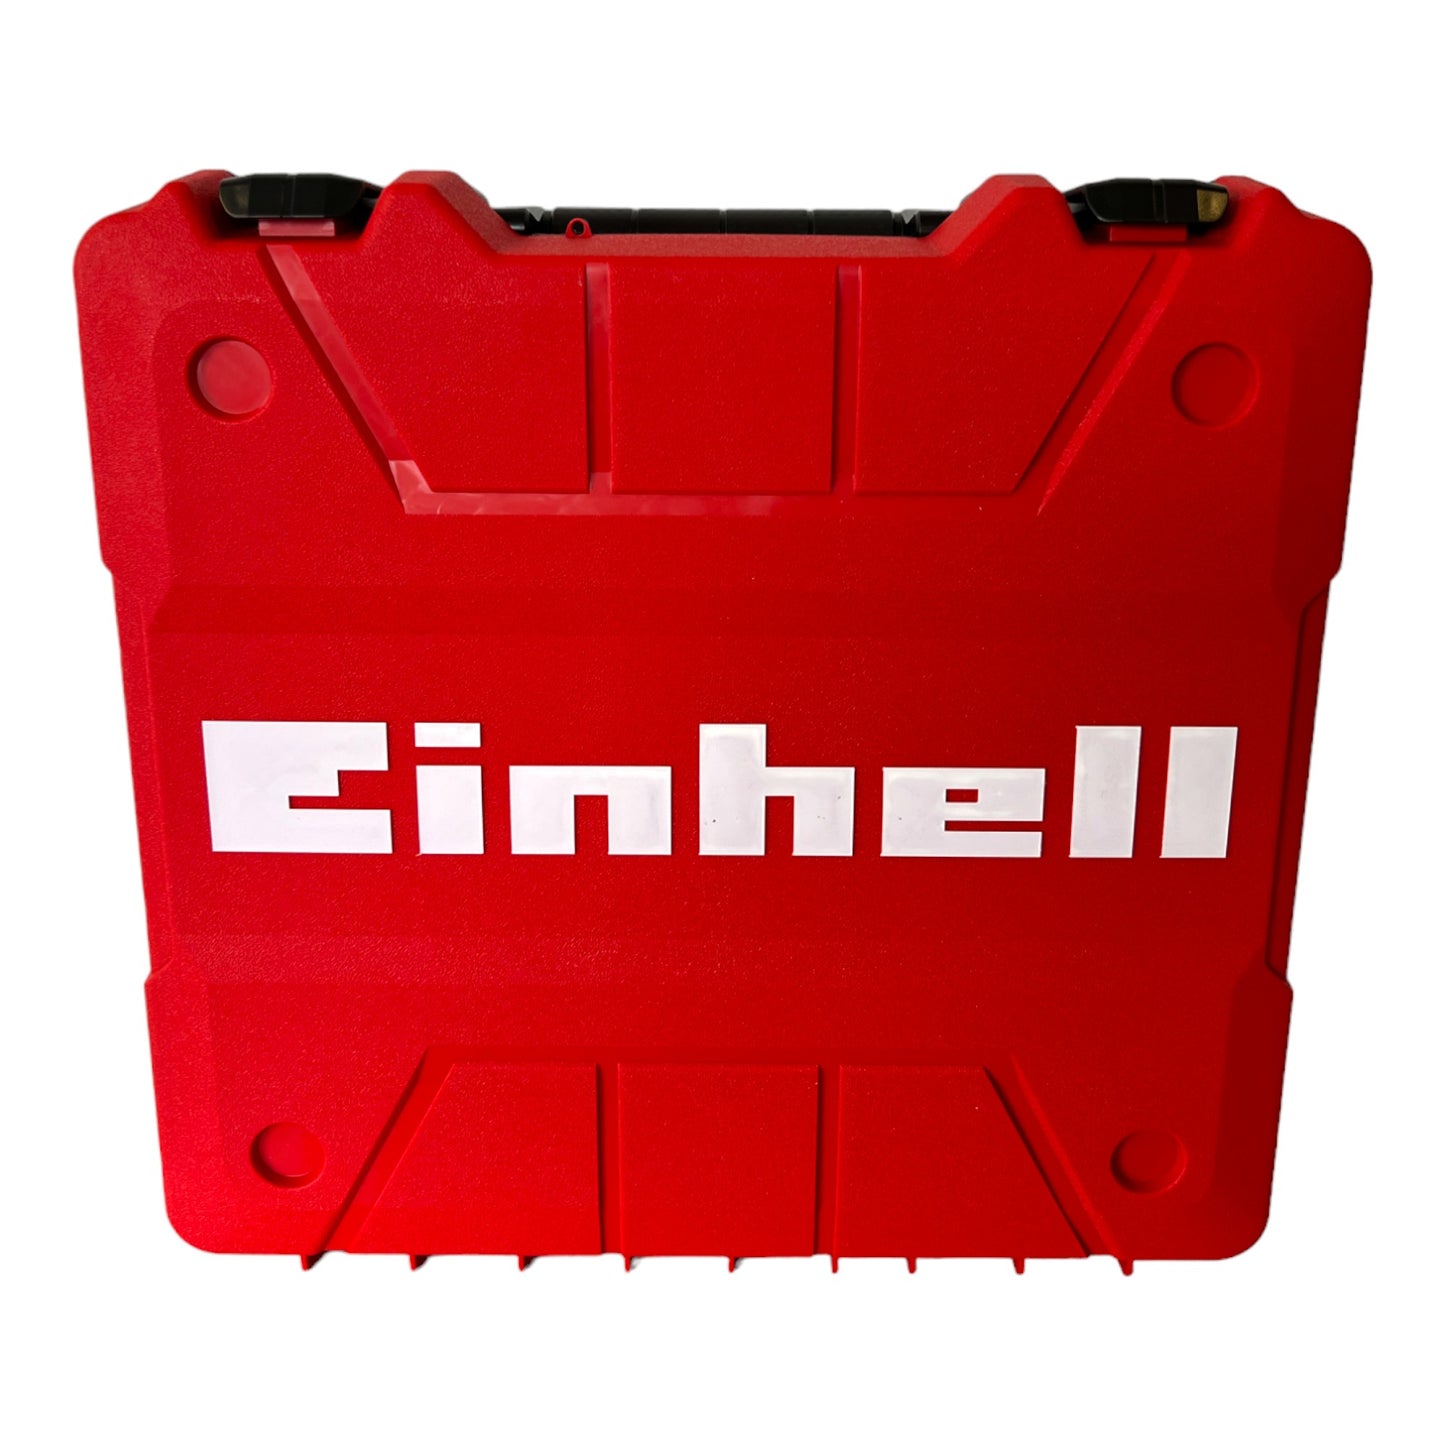 Einhell TE-CD 12/1 3X-Li +39 Akku Bohrschrauber 12 V 30 Nm ( 4513597 ) + 1x Akku 2,0 Ah + Ladegerät + E-Box